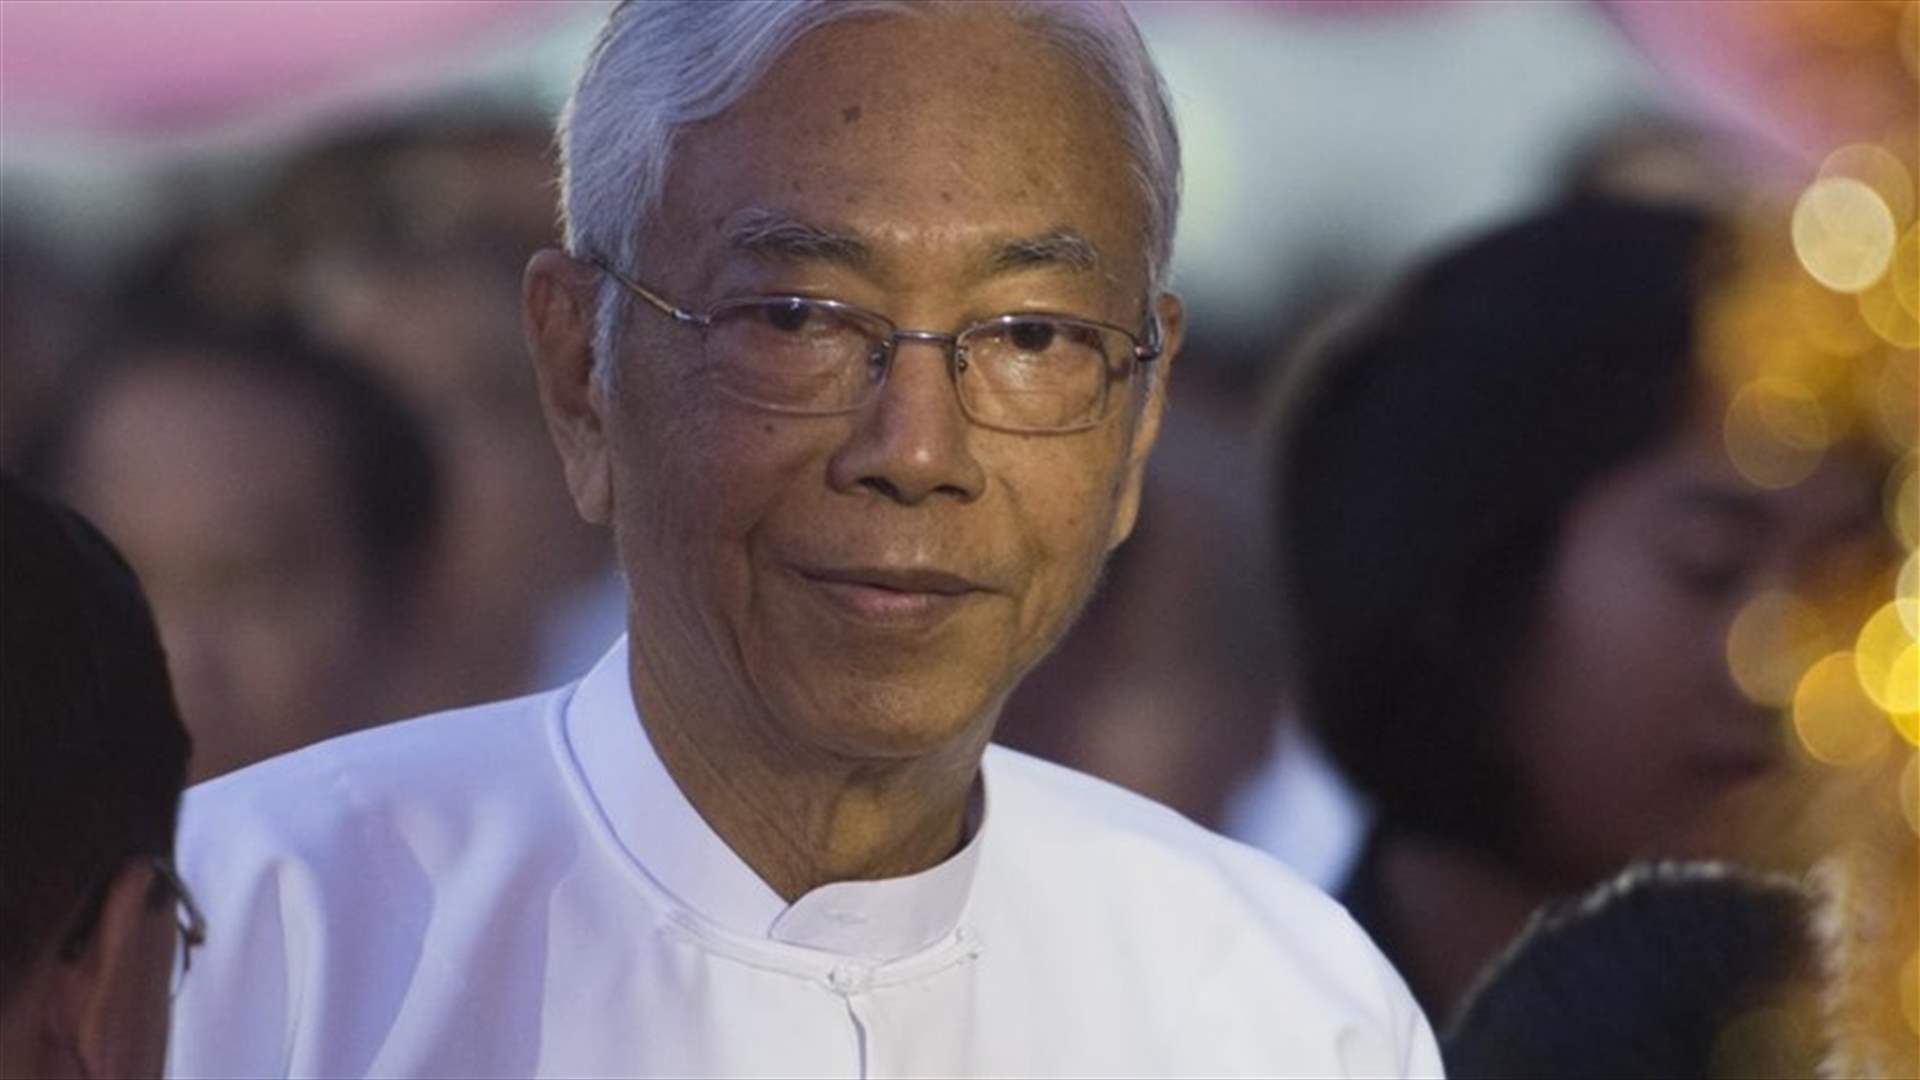 استقالة الرئيس البورمي هتين كياو